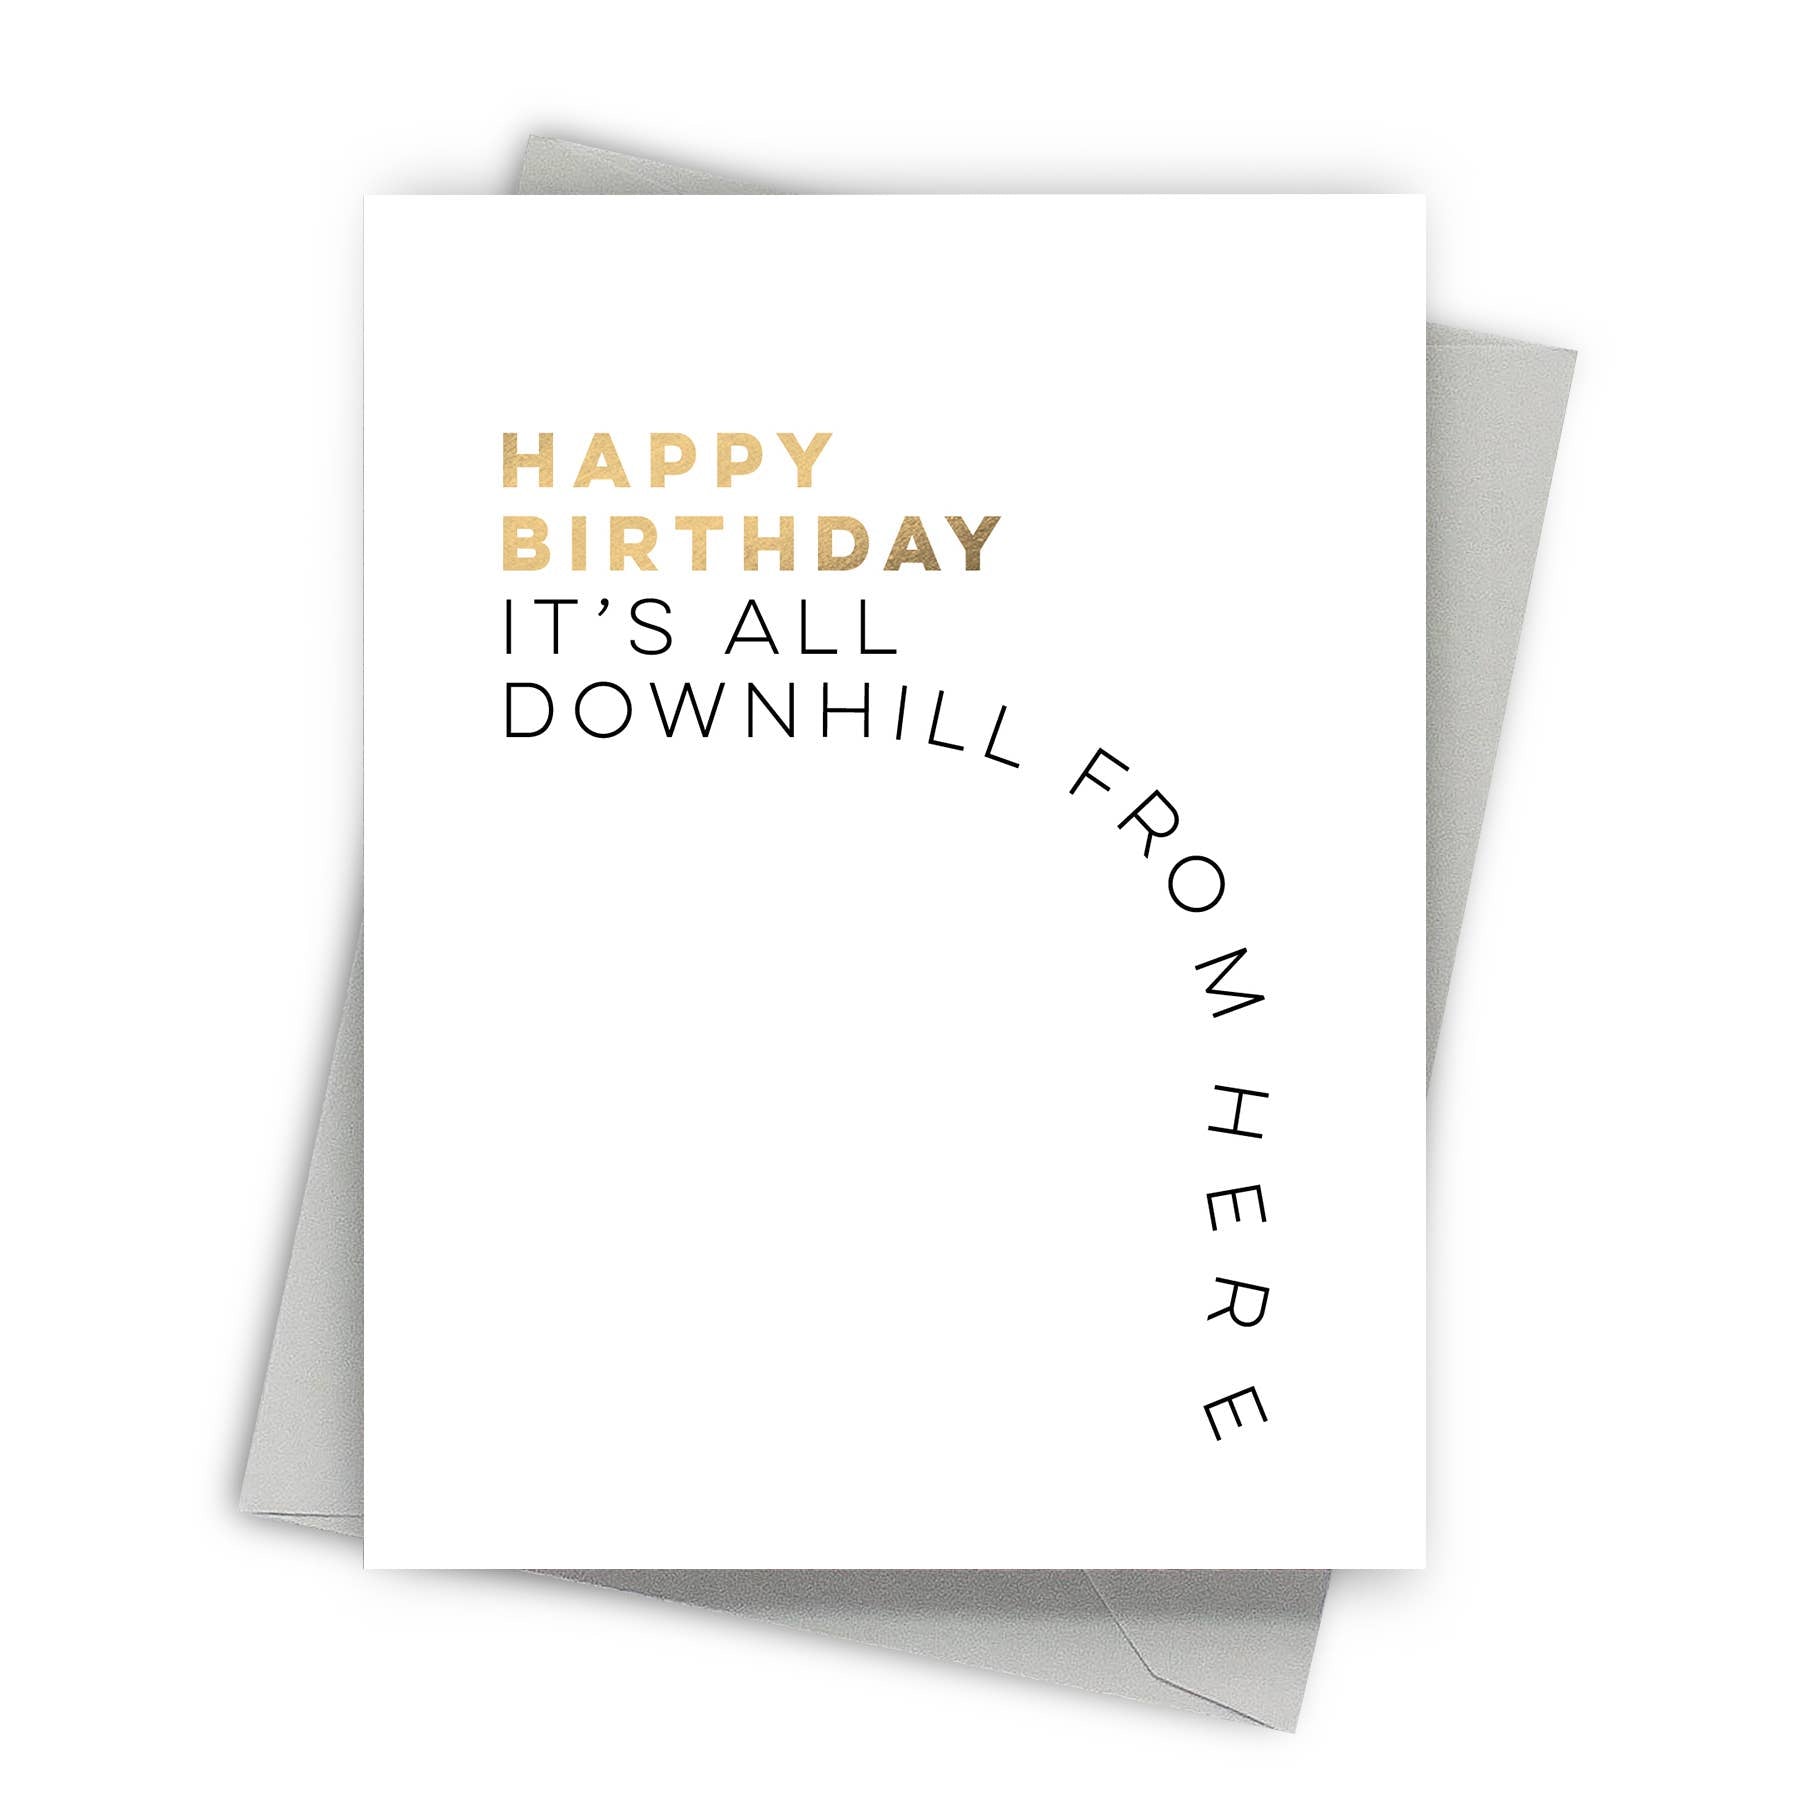 Downhill Birthday – Humorous Birthday Cards